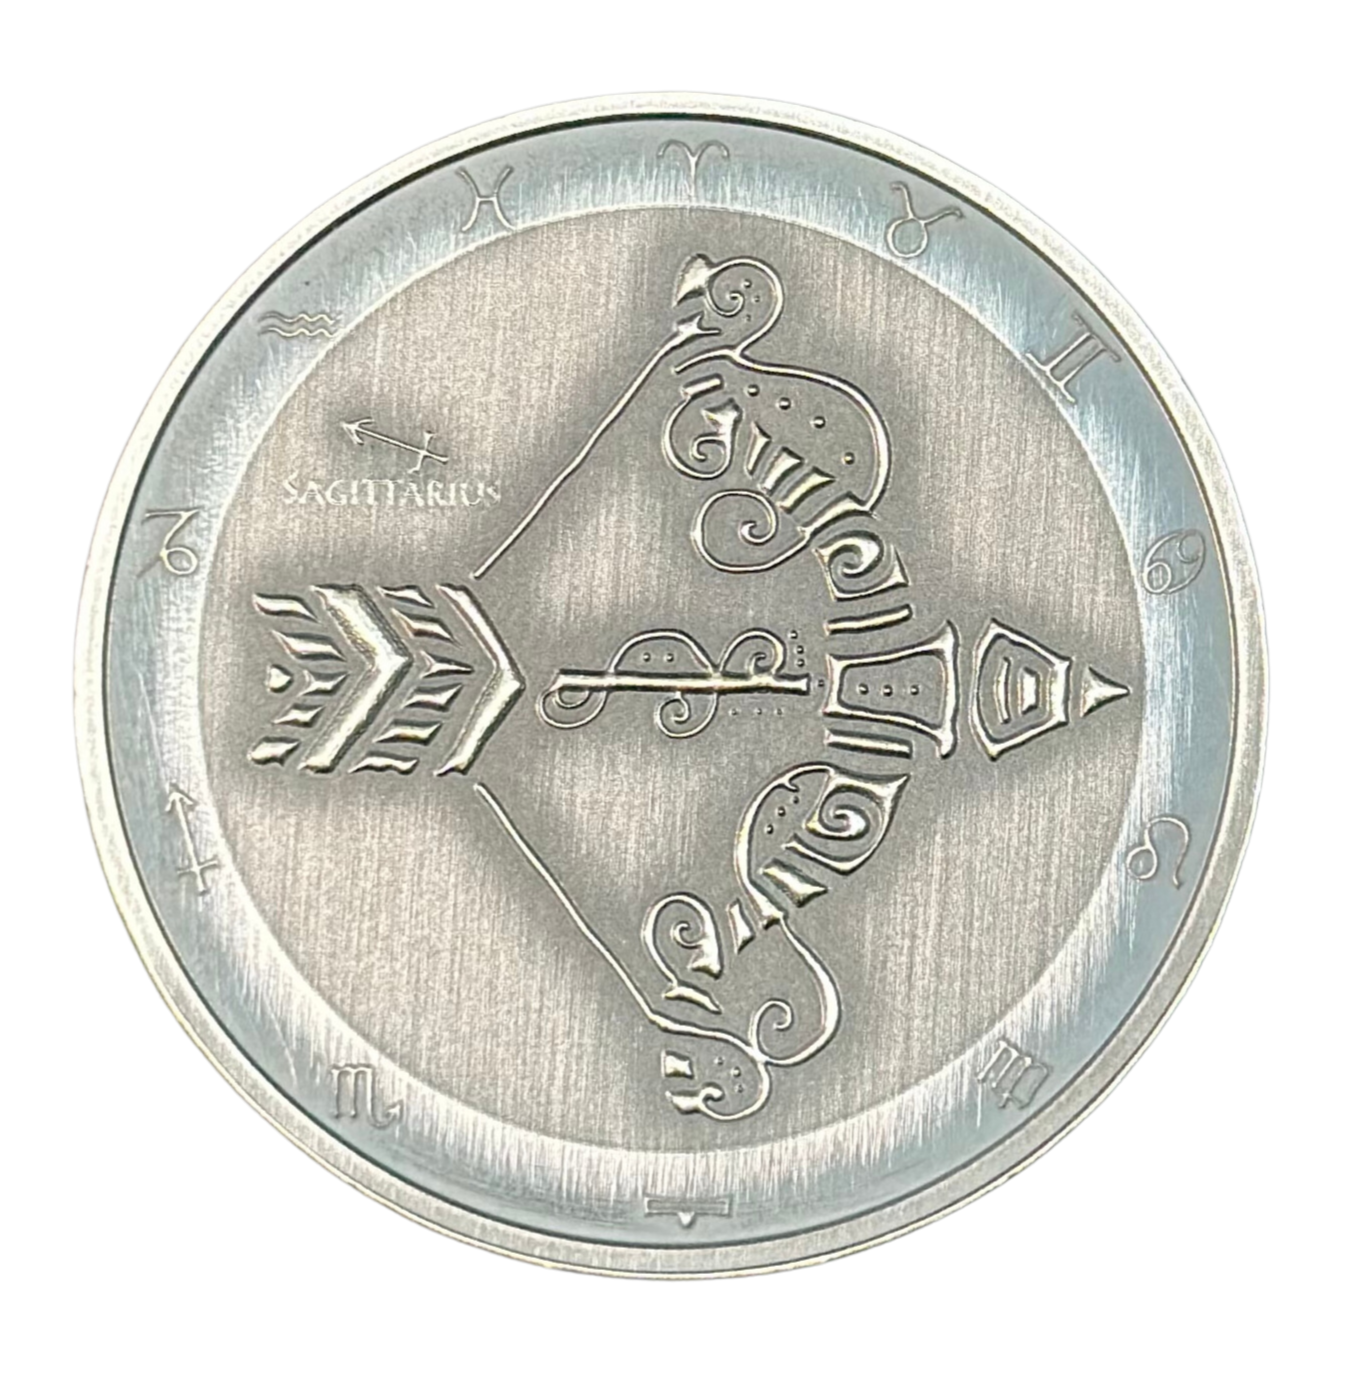 Stříbrná mince 1 oz Střelec Zodiac Antique Limitovaná edice 